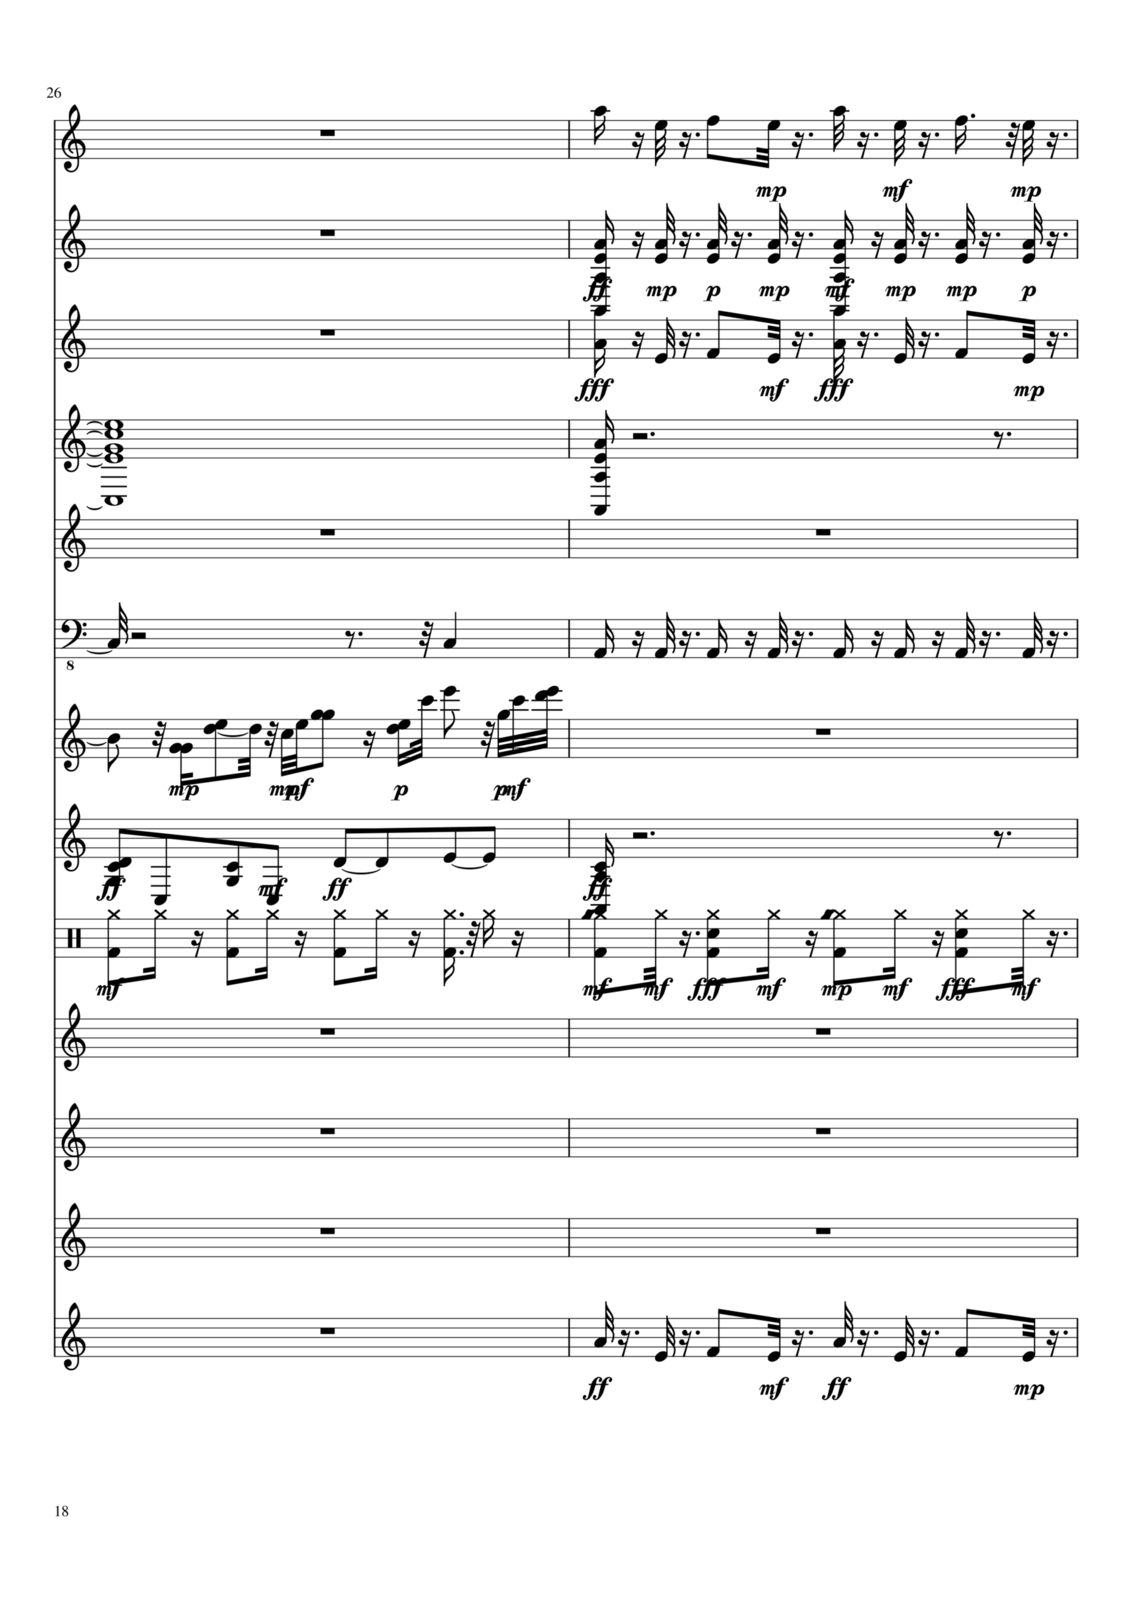 Vetryi i Tumanyi slide, Image 11